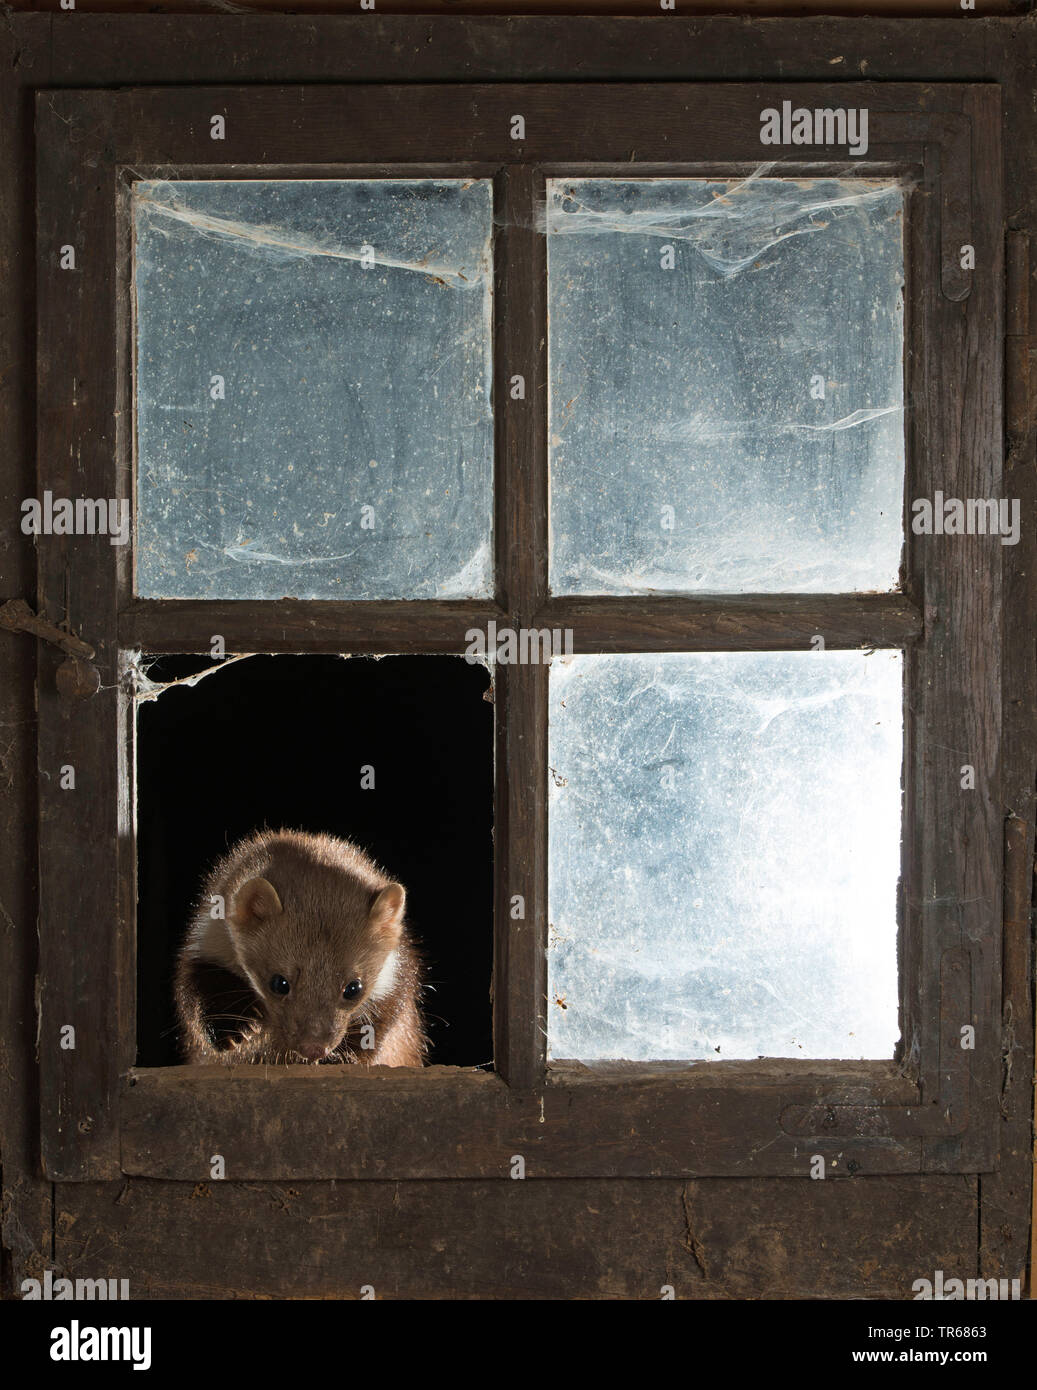 Steinmarder, Steinmarder, Weiße Breasted Marder (Martes foina), in das geöffnete Fenster stabil, Vorderansicht, Deutschland Stockfoto